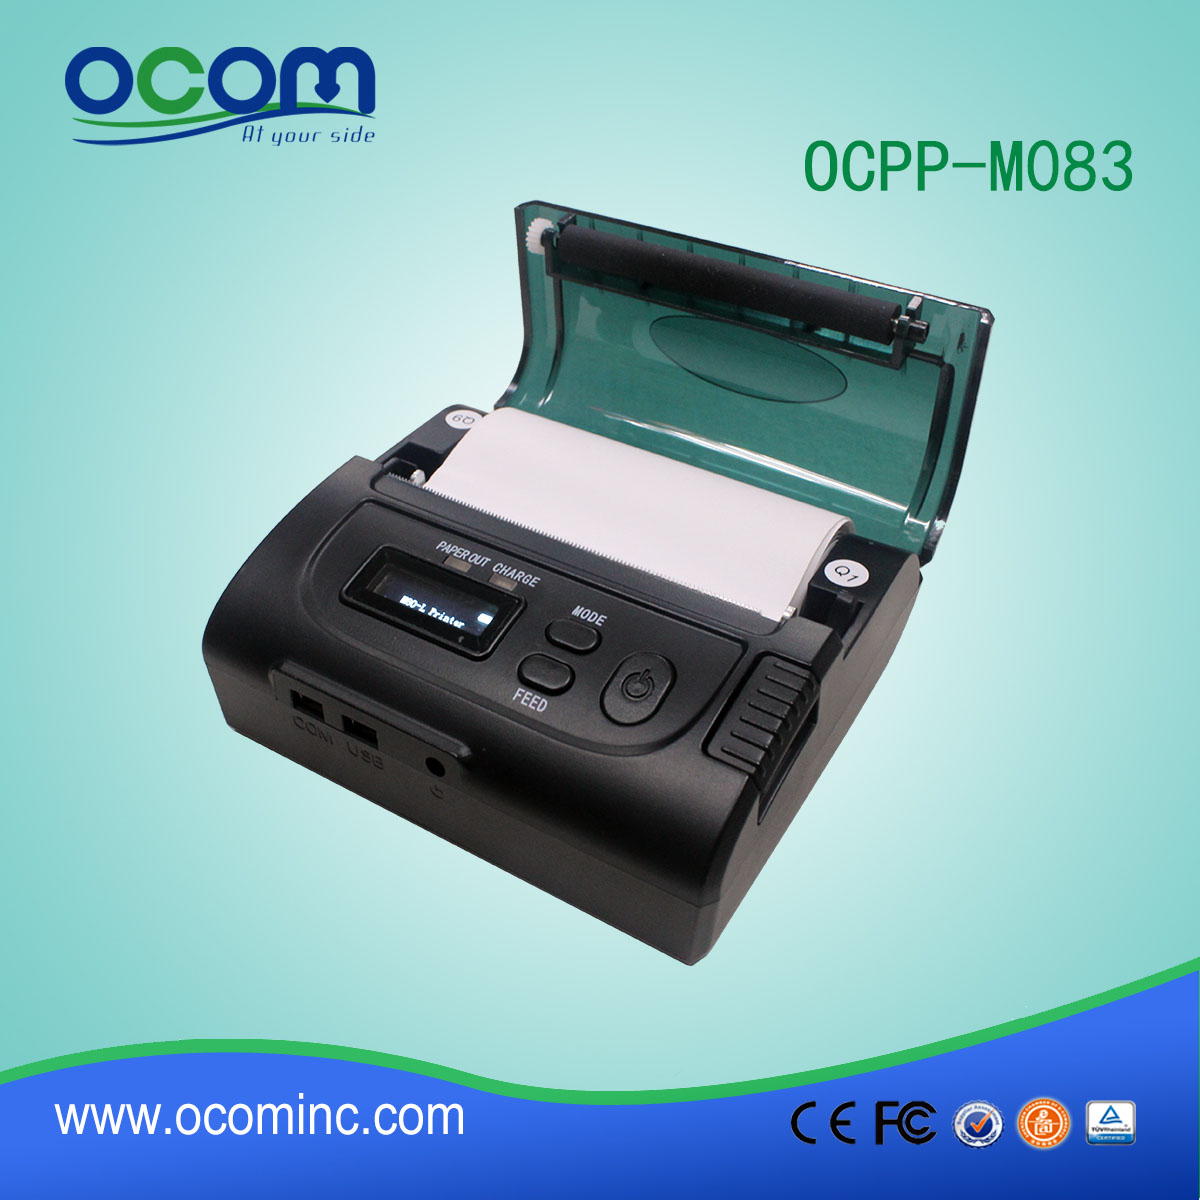 المحمول نقاط البيع استلام الطابعة الحرارية لنظام تاكسي OCPP-M083